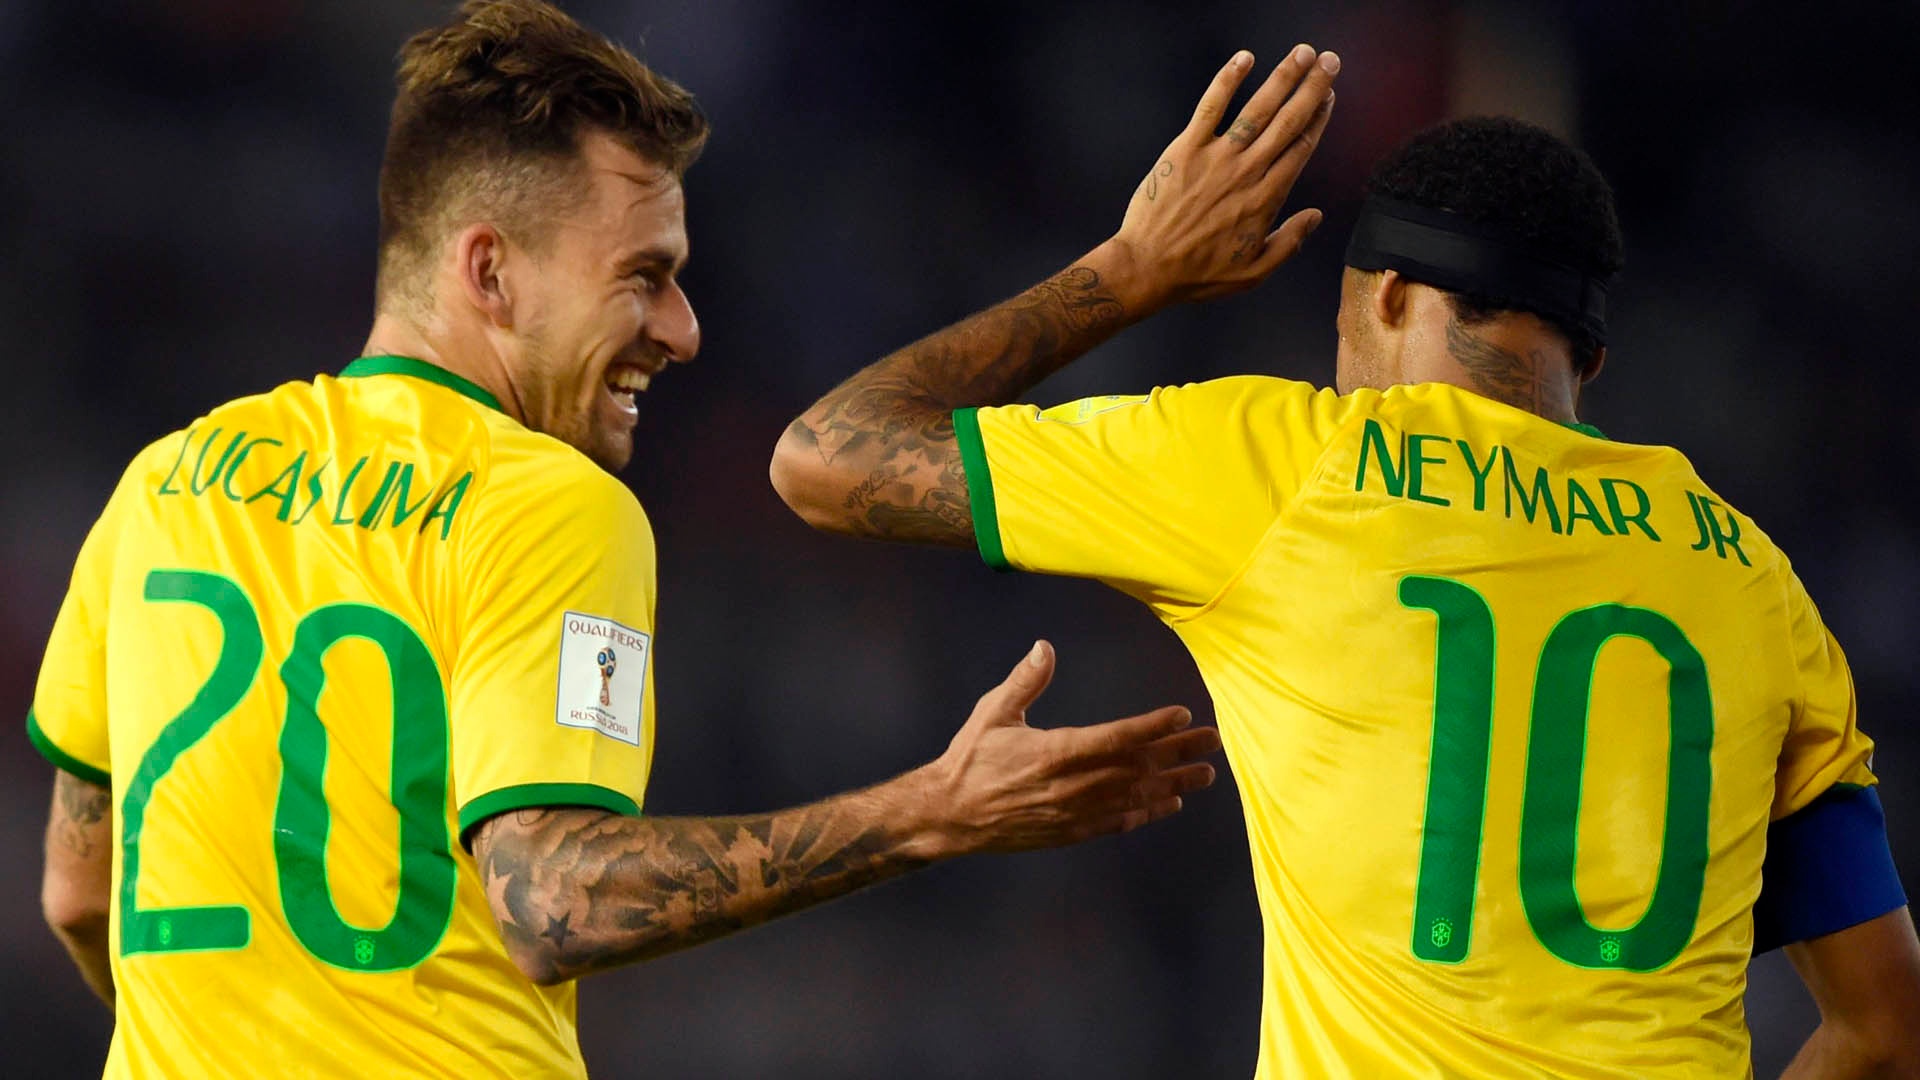 Neymar fica fora da lista dos 18 melhores jogadores da Champions League -  Esporte - Extra Online